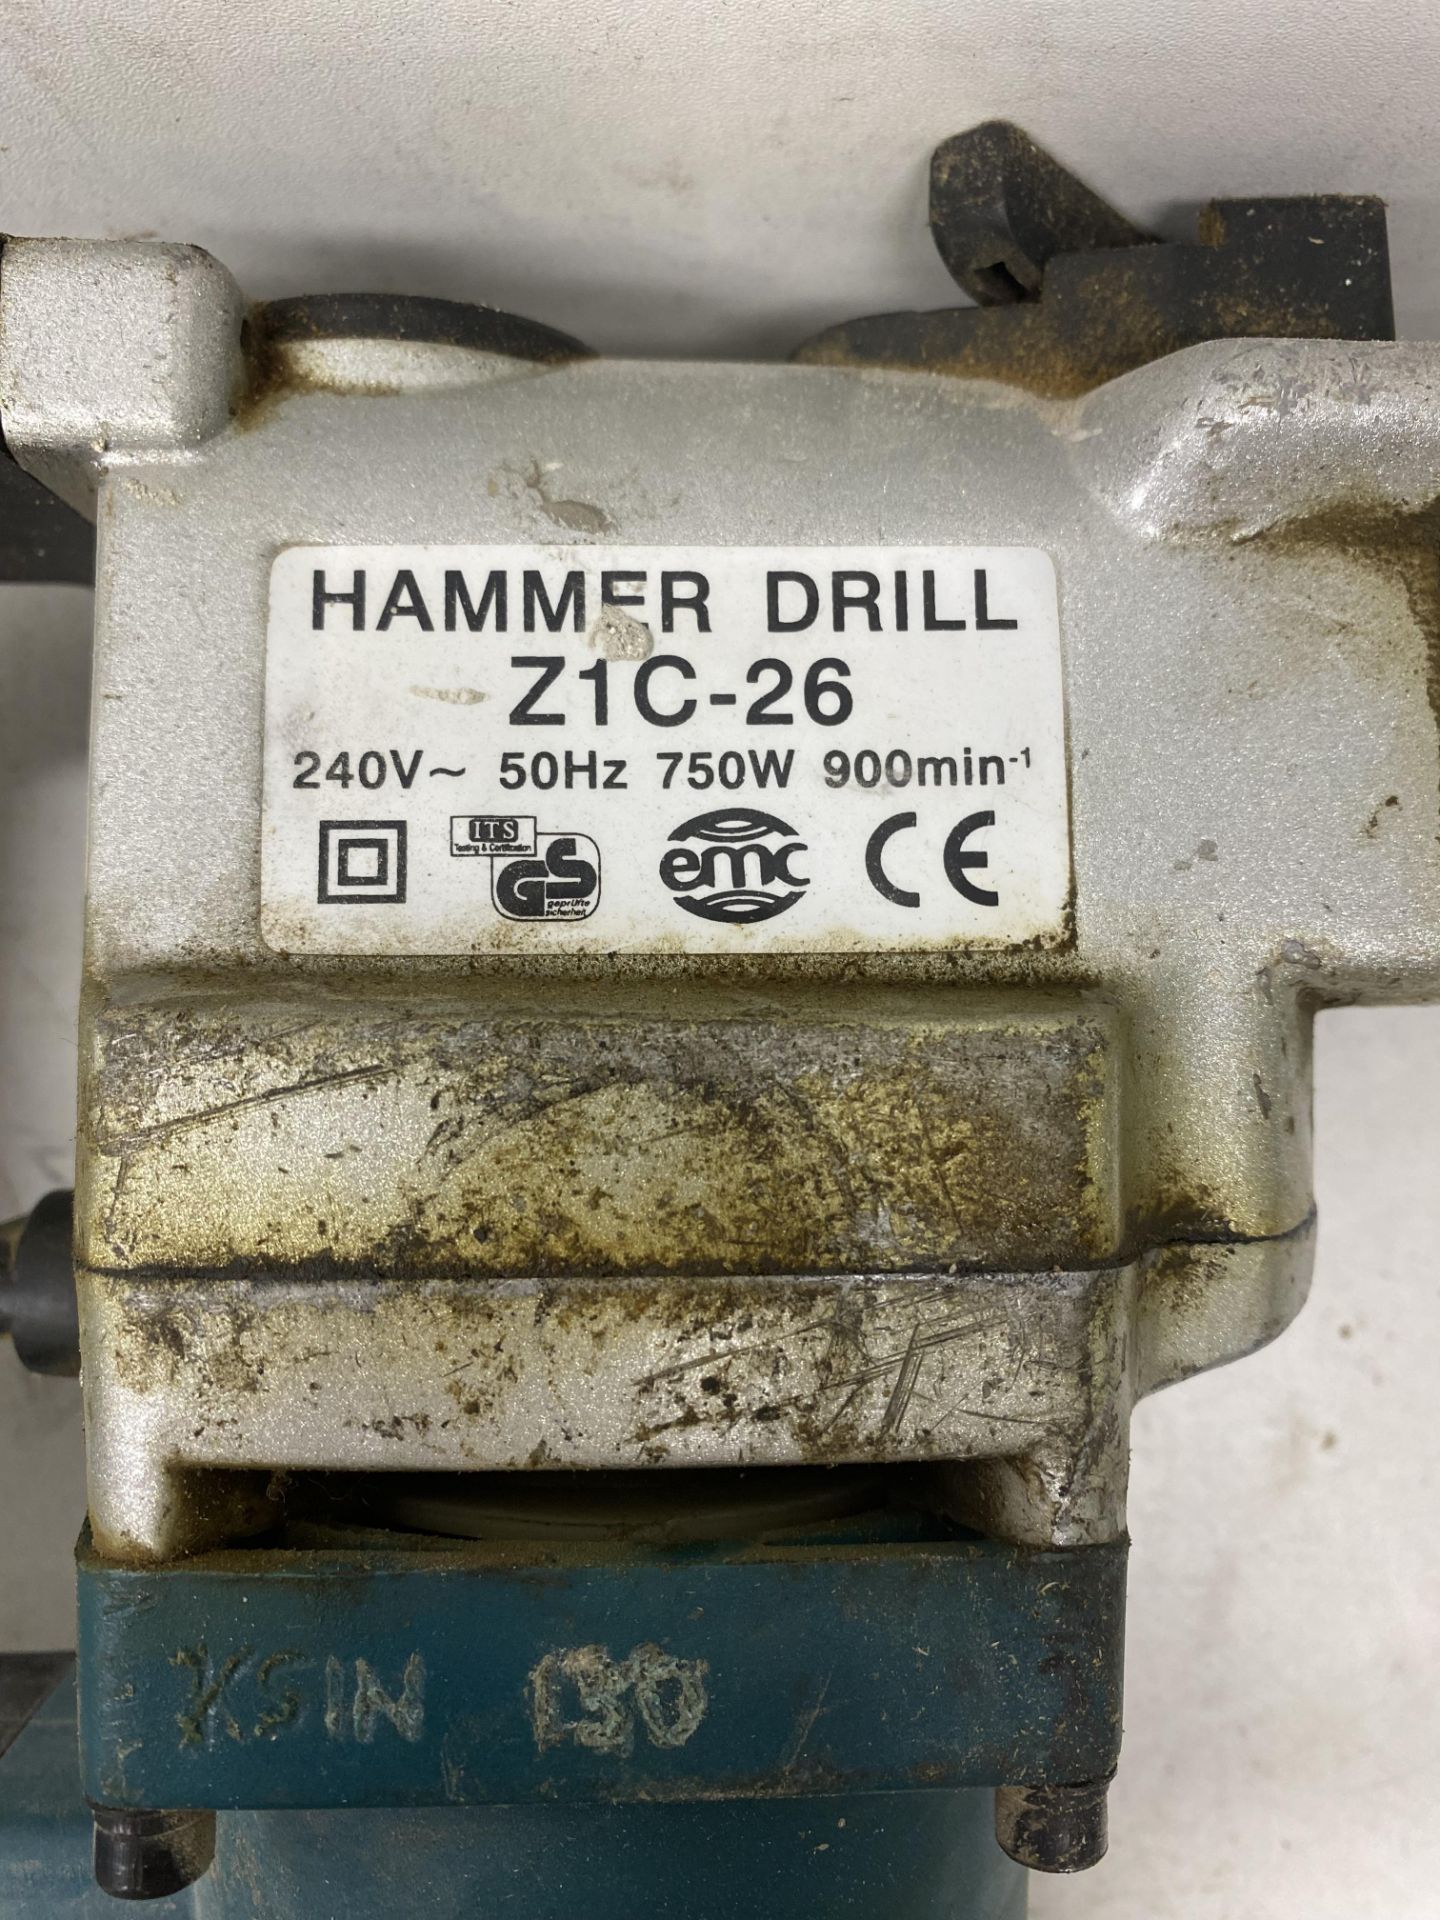 Makita Z1C-26 Hammer Drill - Image 9 of 10